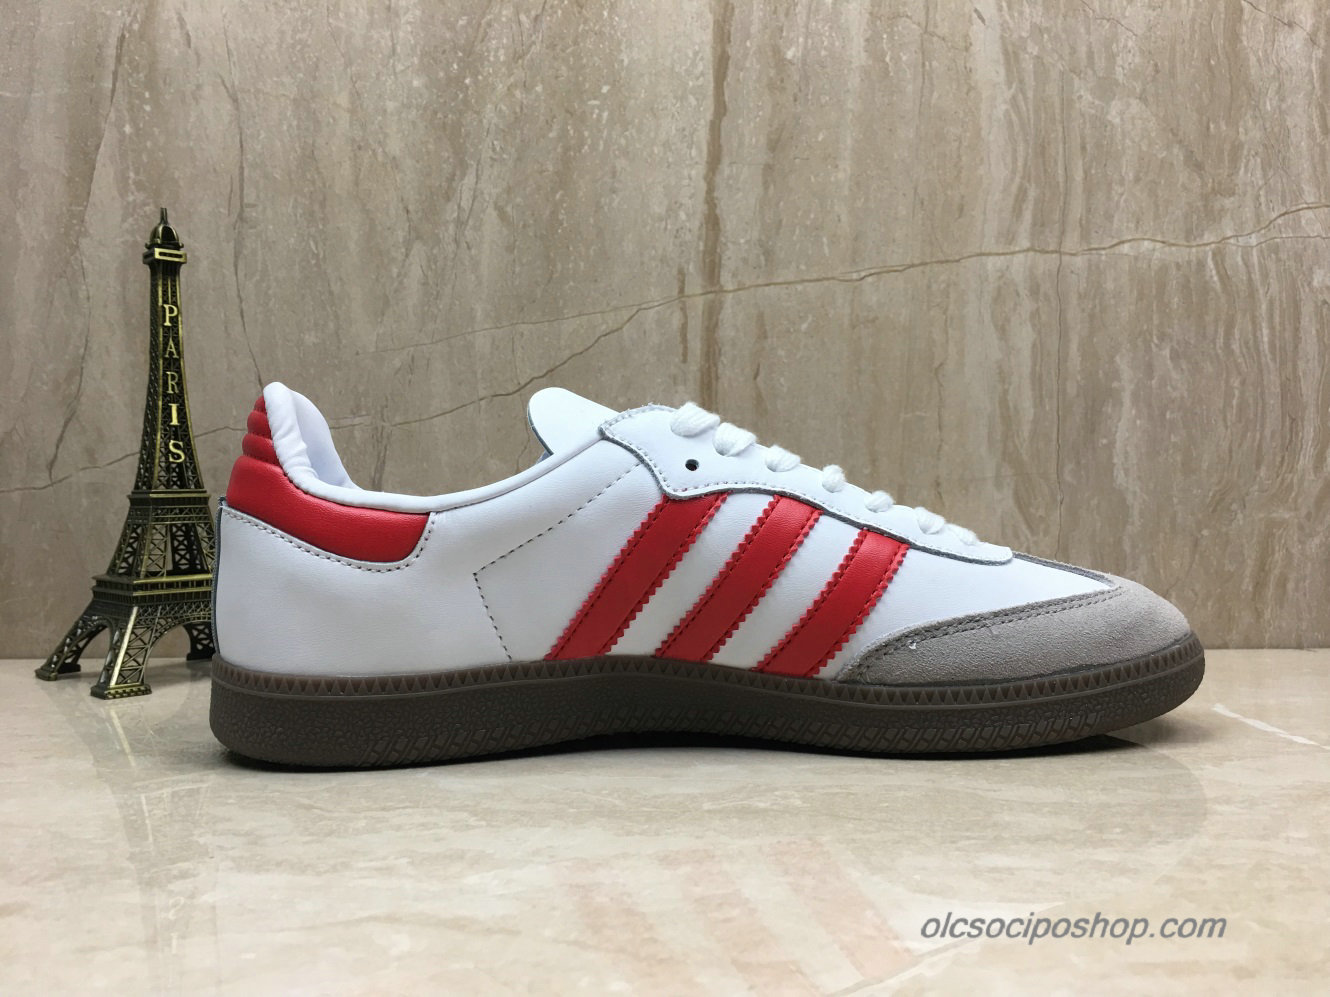 Adidas Samba OG Fehér/Piros/Szürke Cipők (B44628)